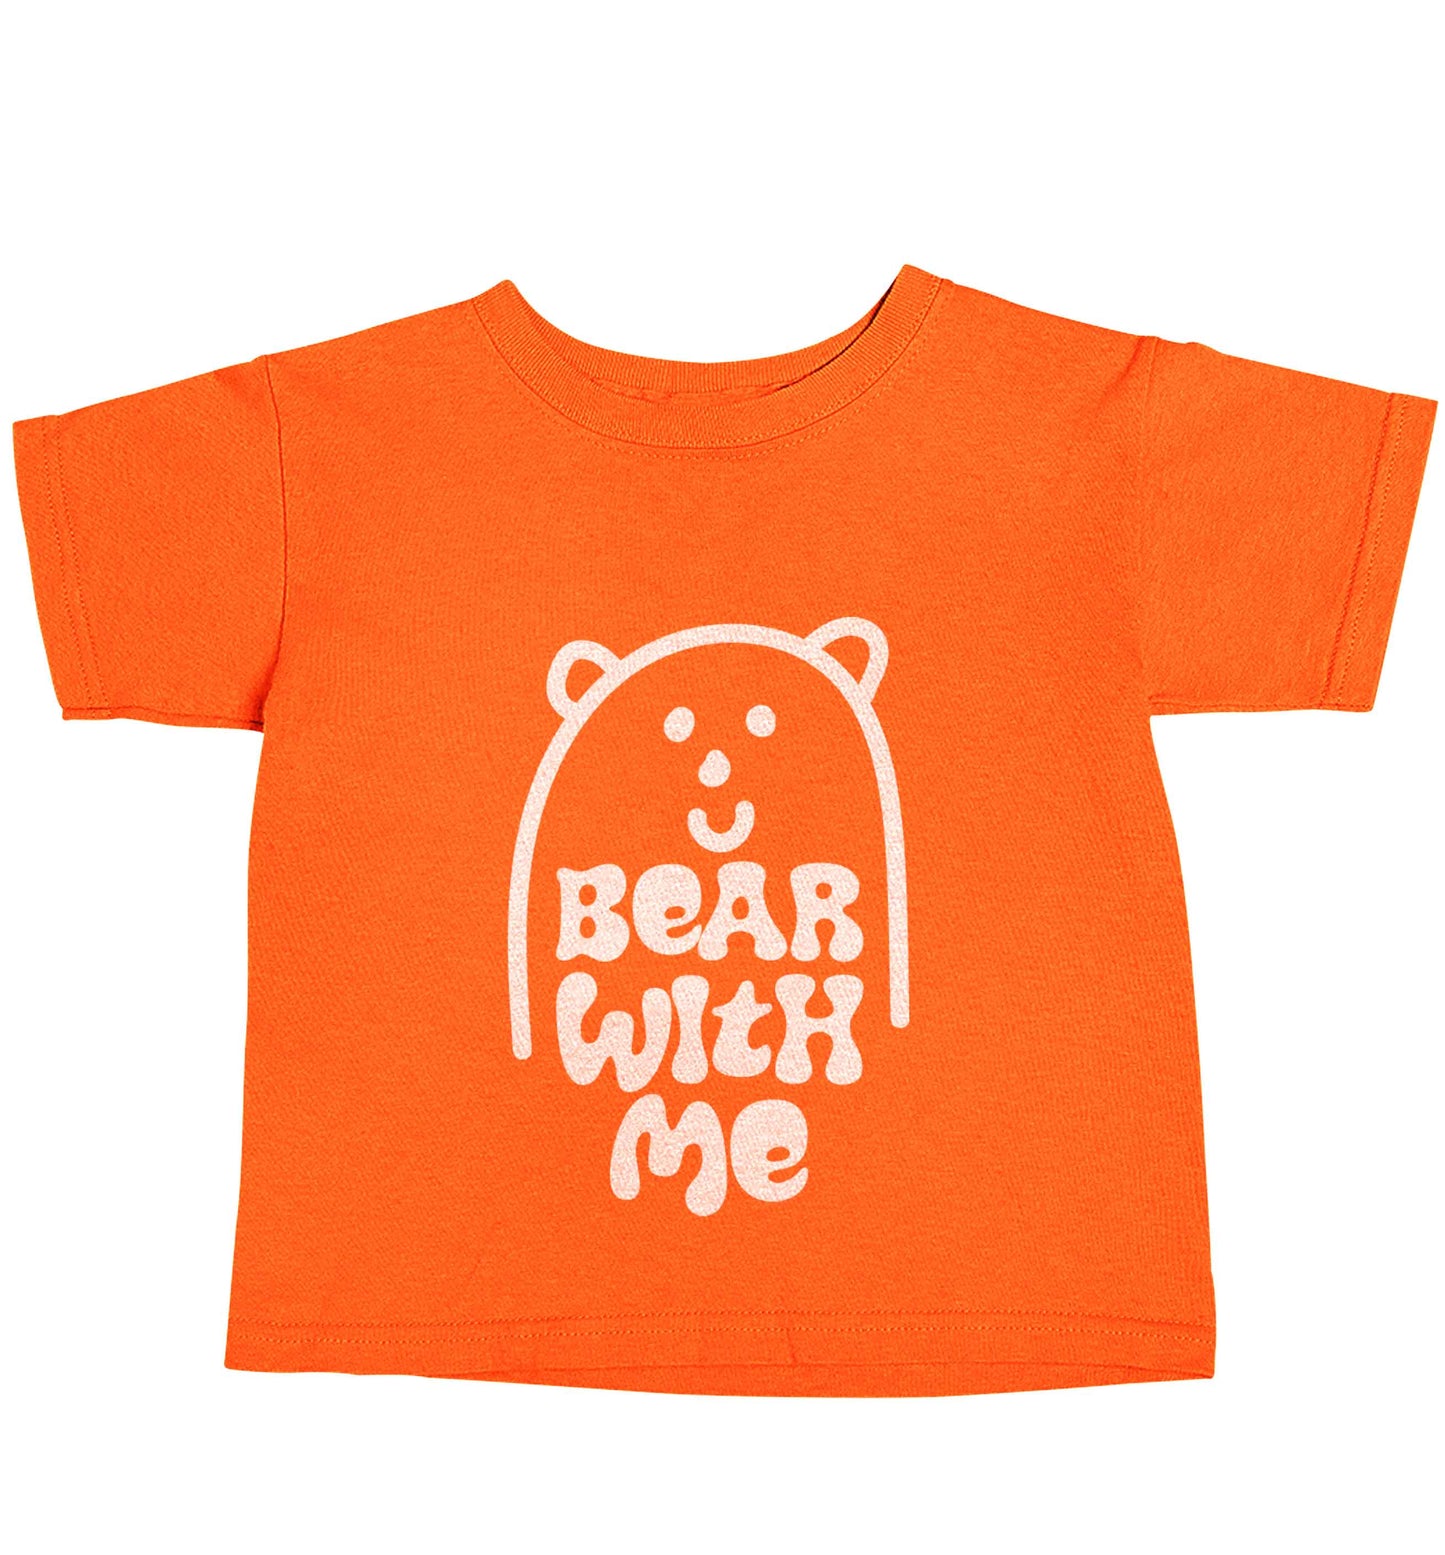 Bear With Me Kit orange baby toddler Tshirt 2 Years